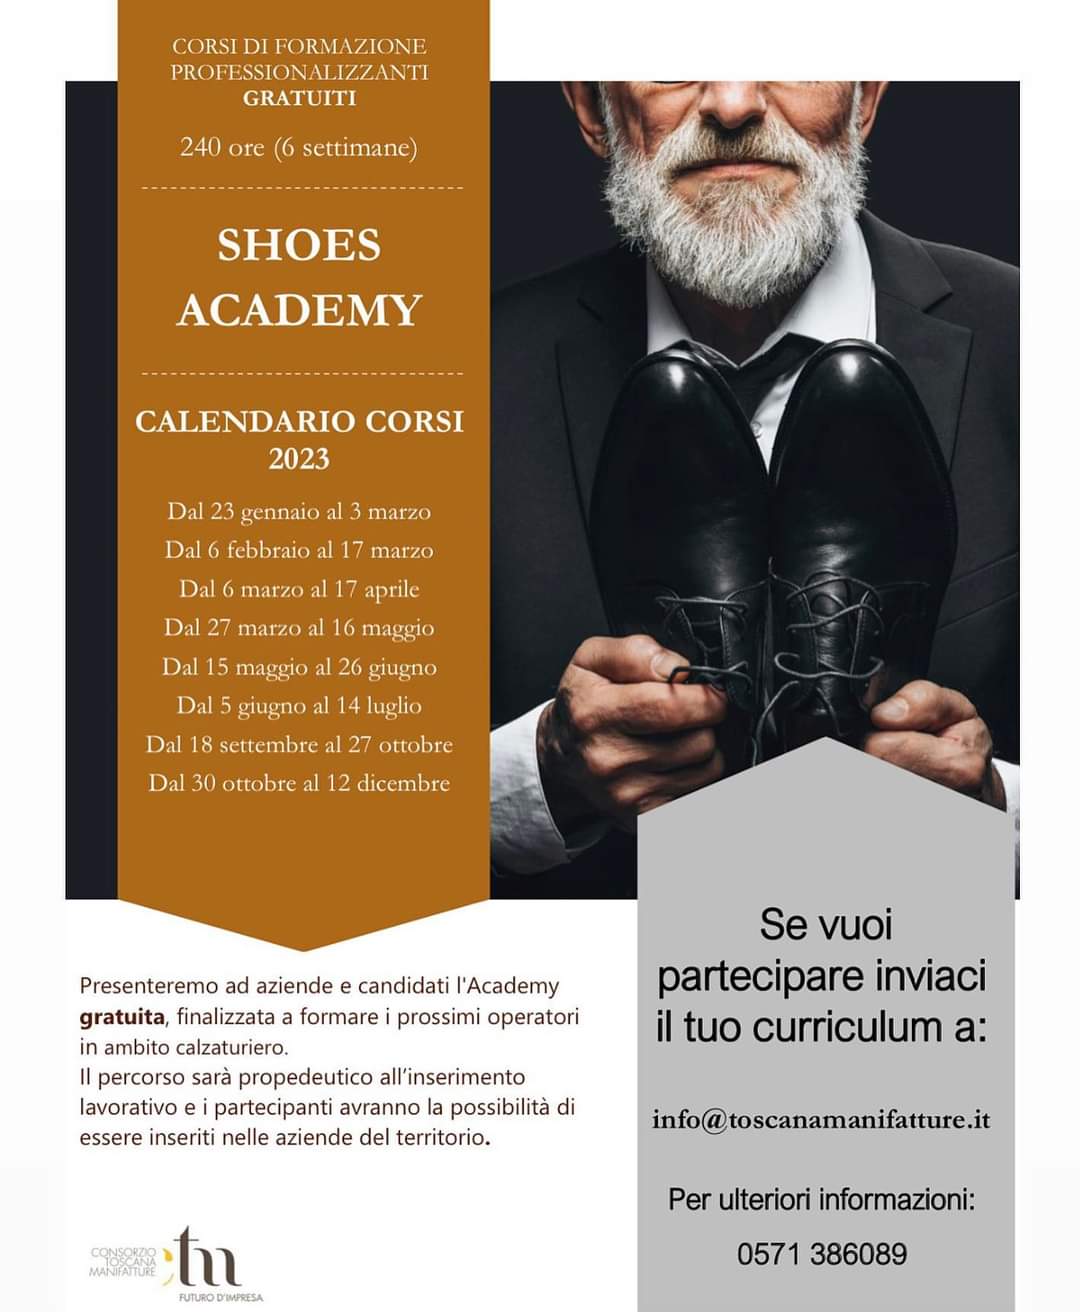 Calendario corsi 2023 Shoes Accademy